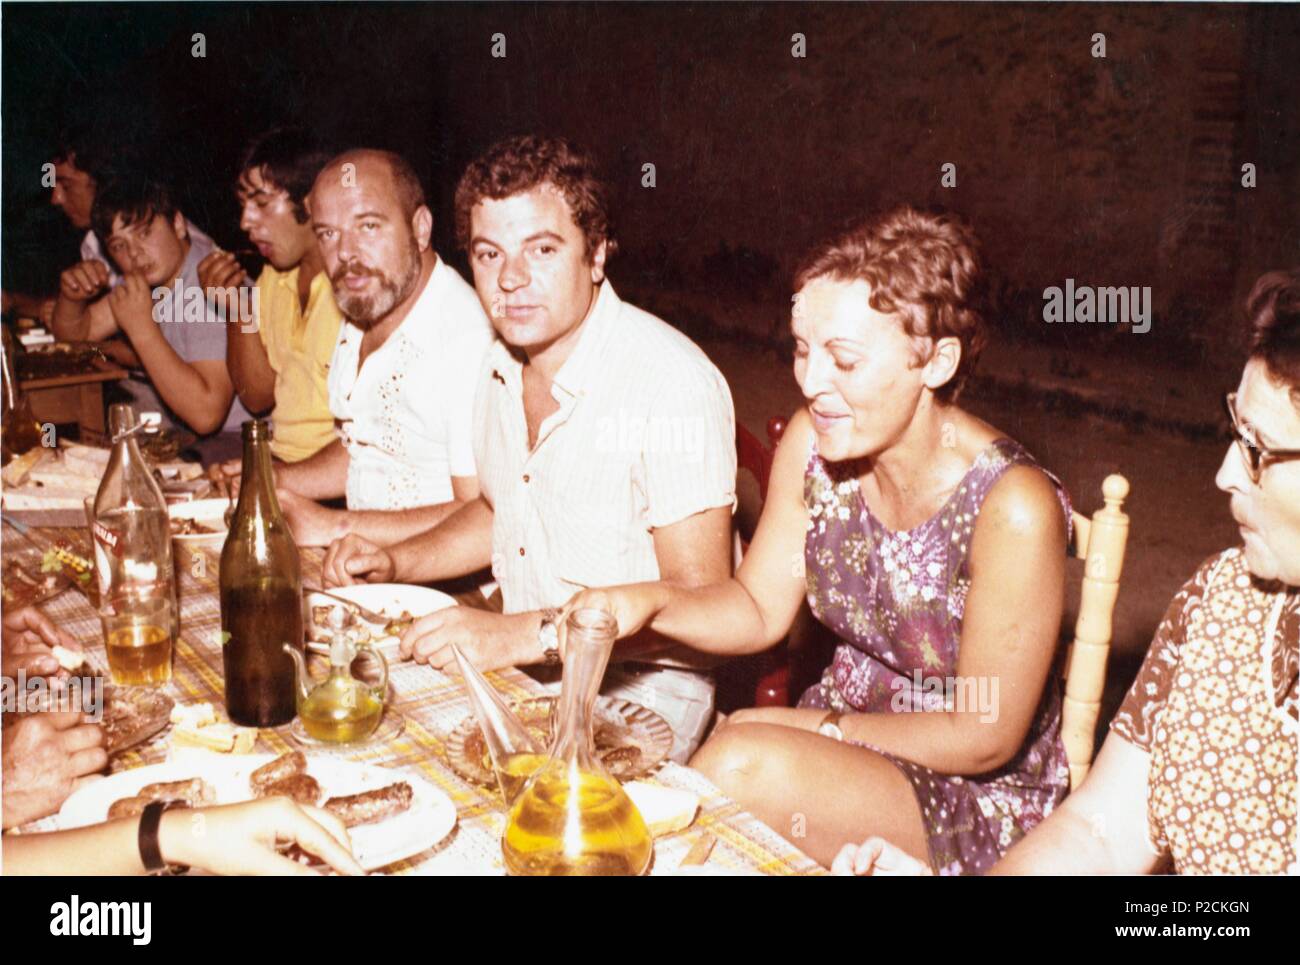 El escritor español Juan Marsé con su mujer Joaquina Hoyas cenando en la localidad de l'Arboç (Cataluña) con el escritor Jaime Gil de Biedma. Stock Photo